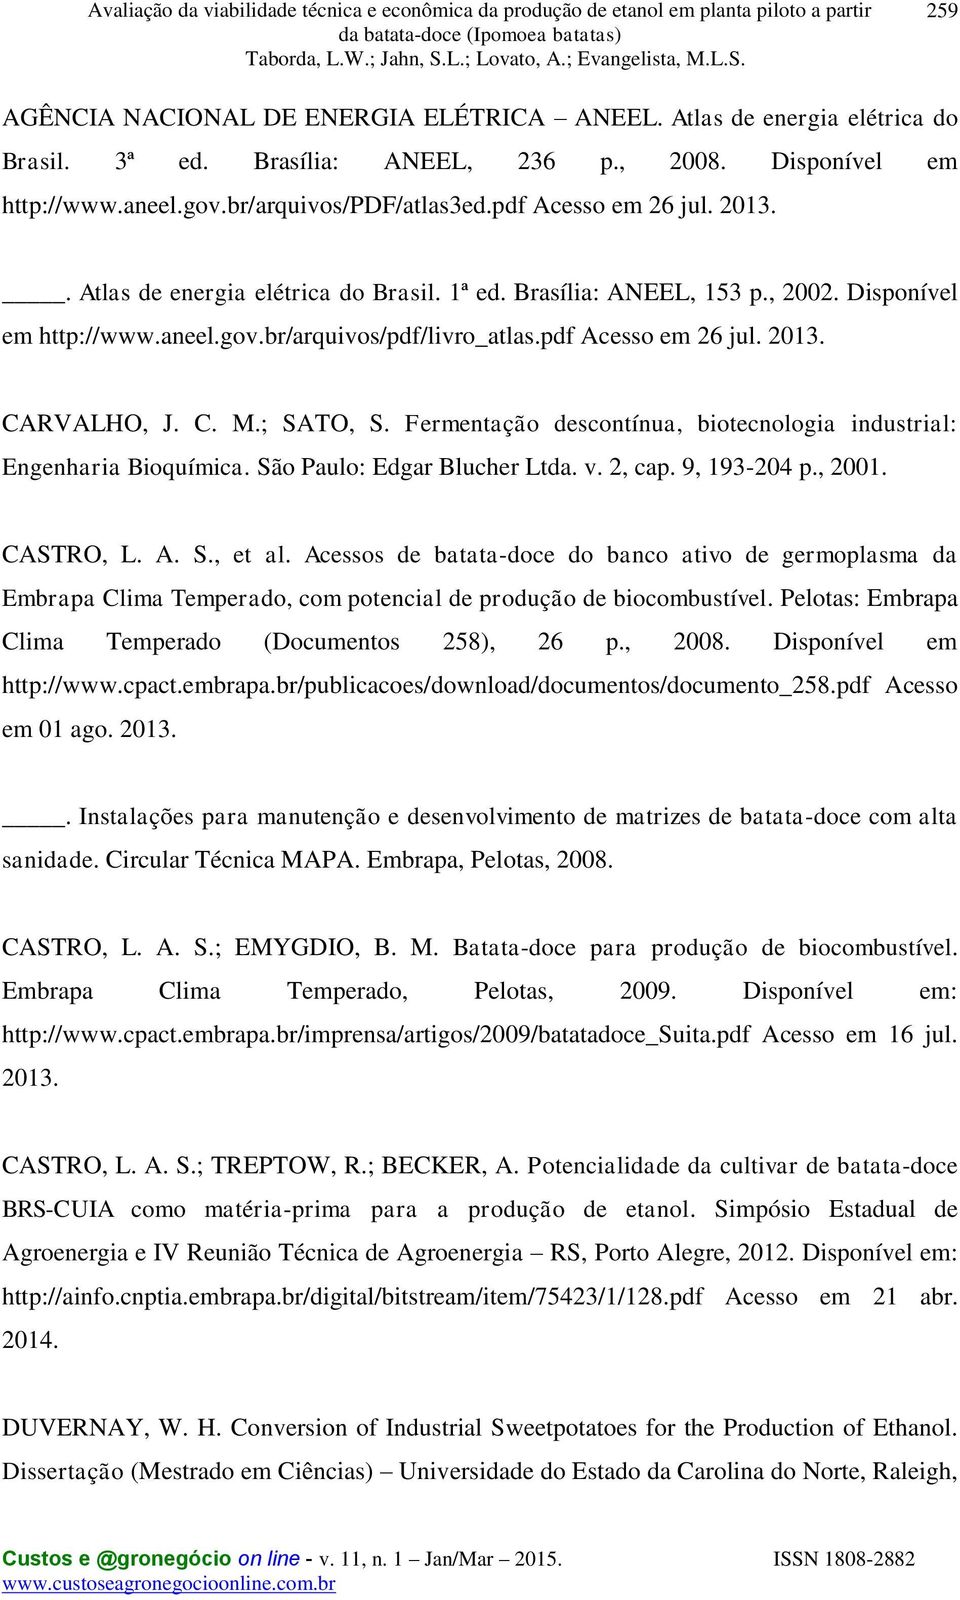 C. M.; SATO, S. Fermentação descontínua, biotecnologia industrial: Engenharia Bioquímica. São Paulo: Edgar Blucher Ltda. v. 2, cap. 9, 193-204 p., 2001. CASTRO, L. A. S., et al.